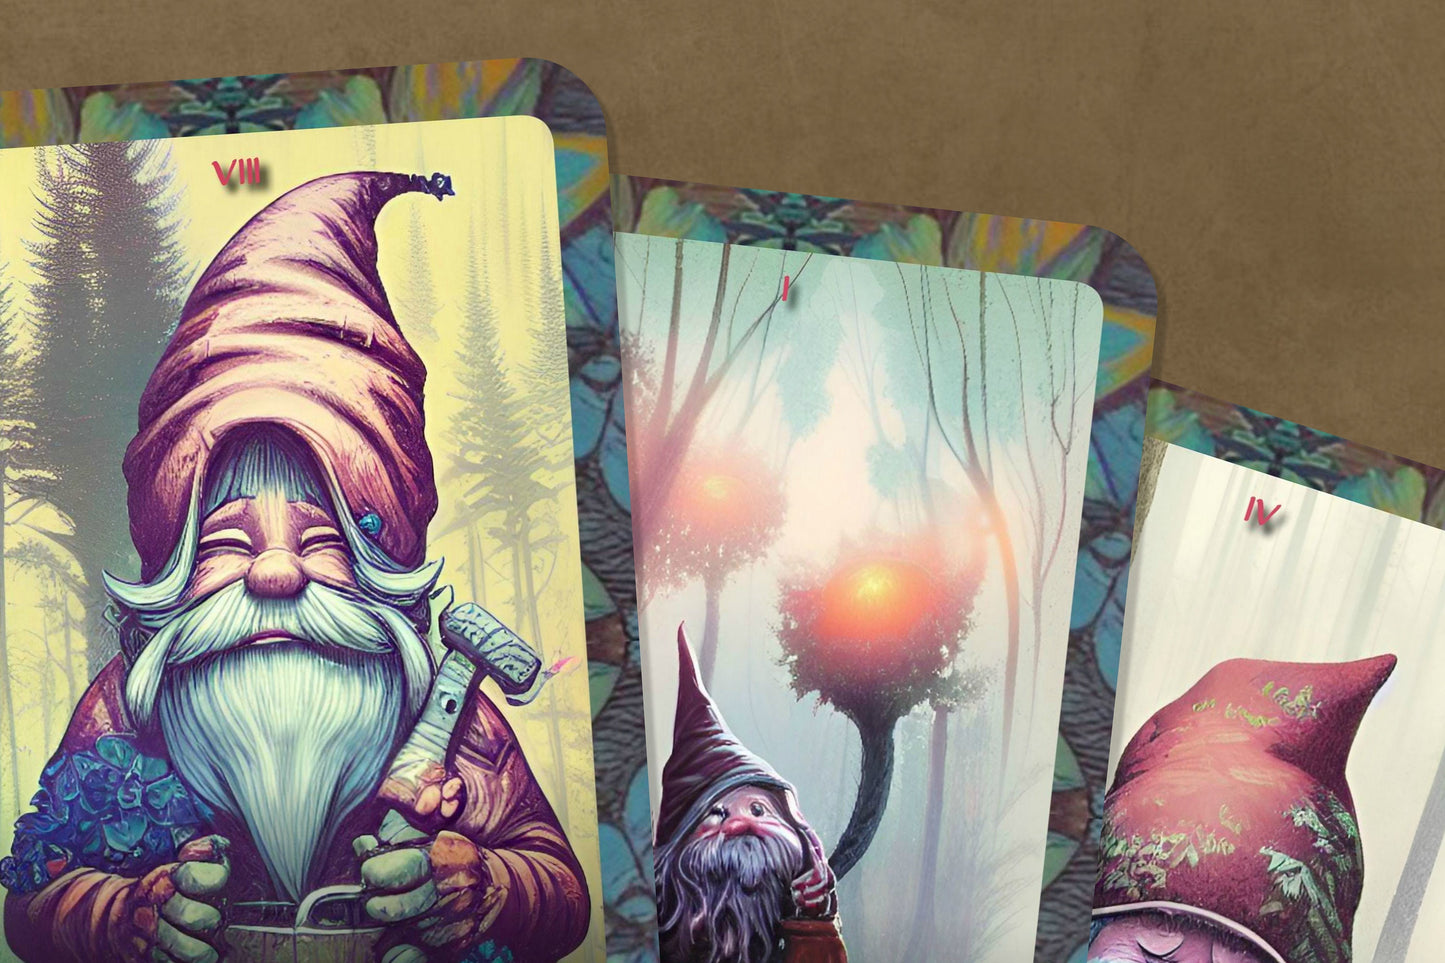 Gnomes Tarot  - Major Arcana